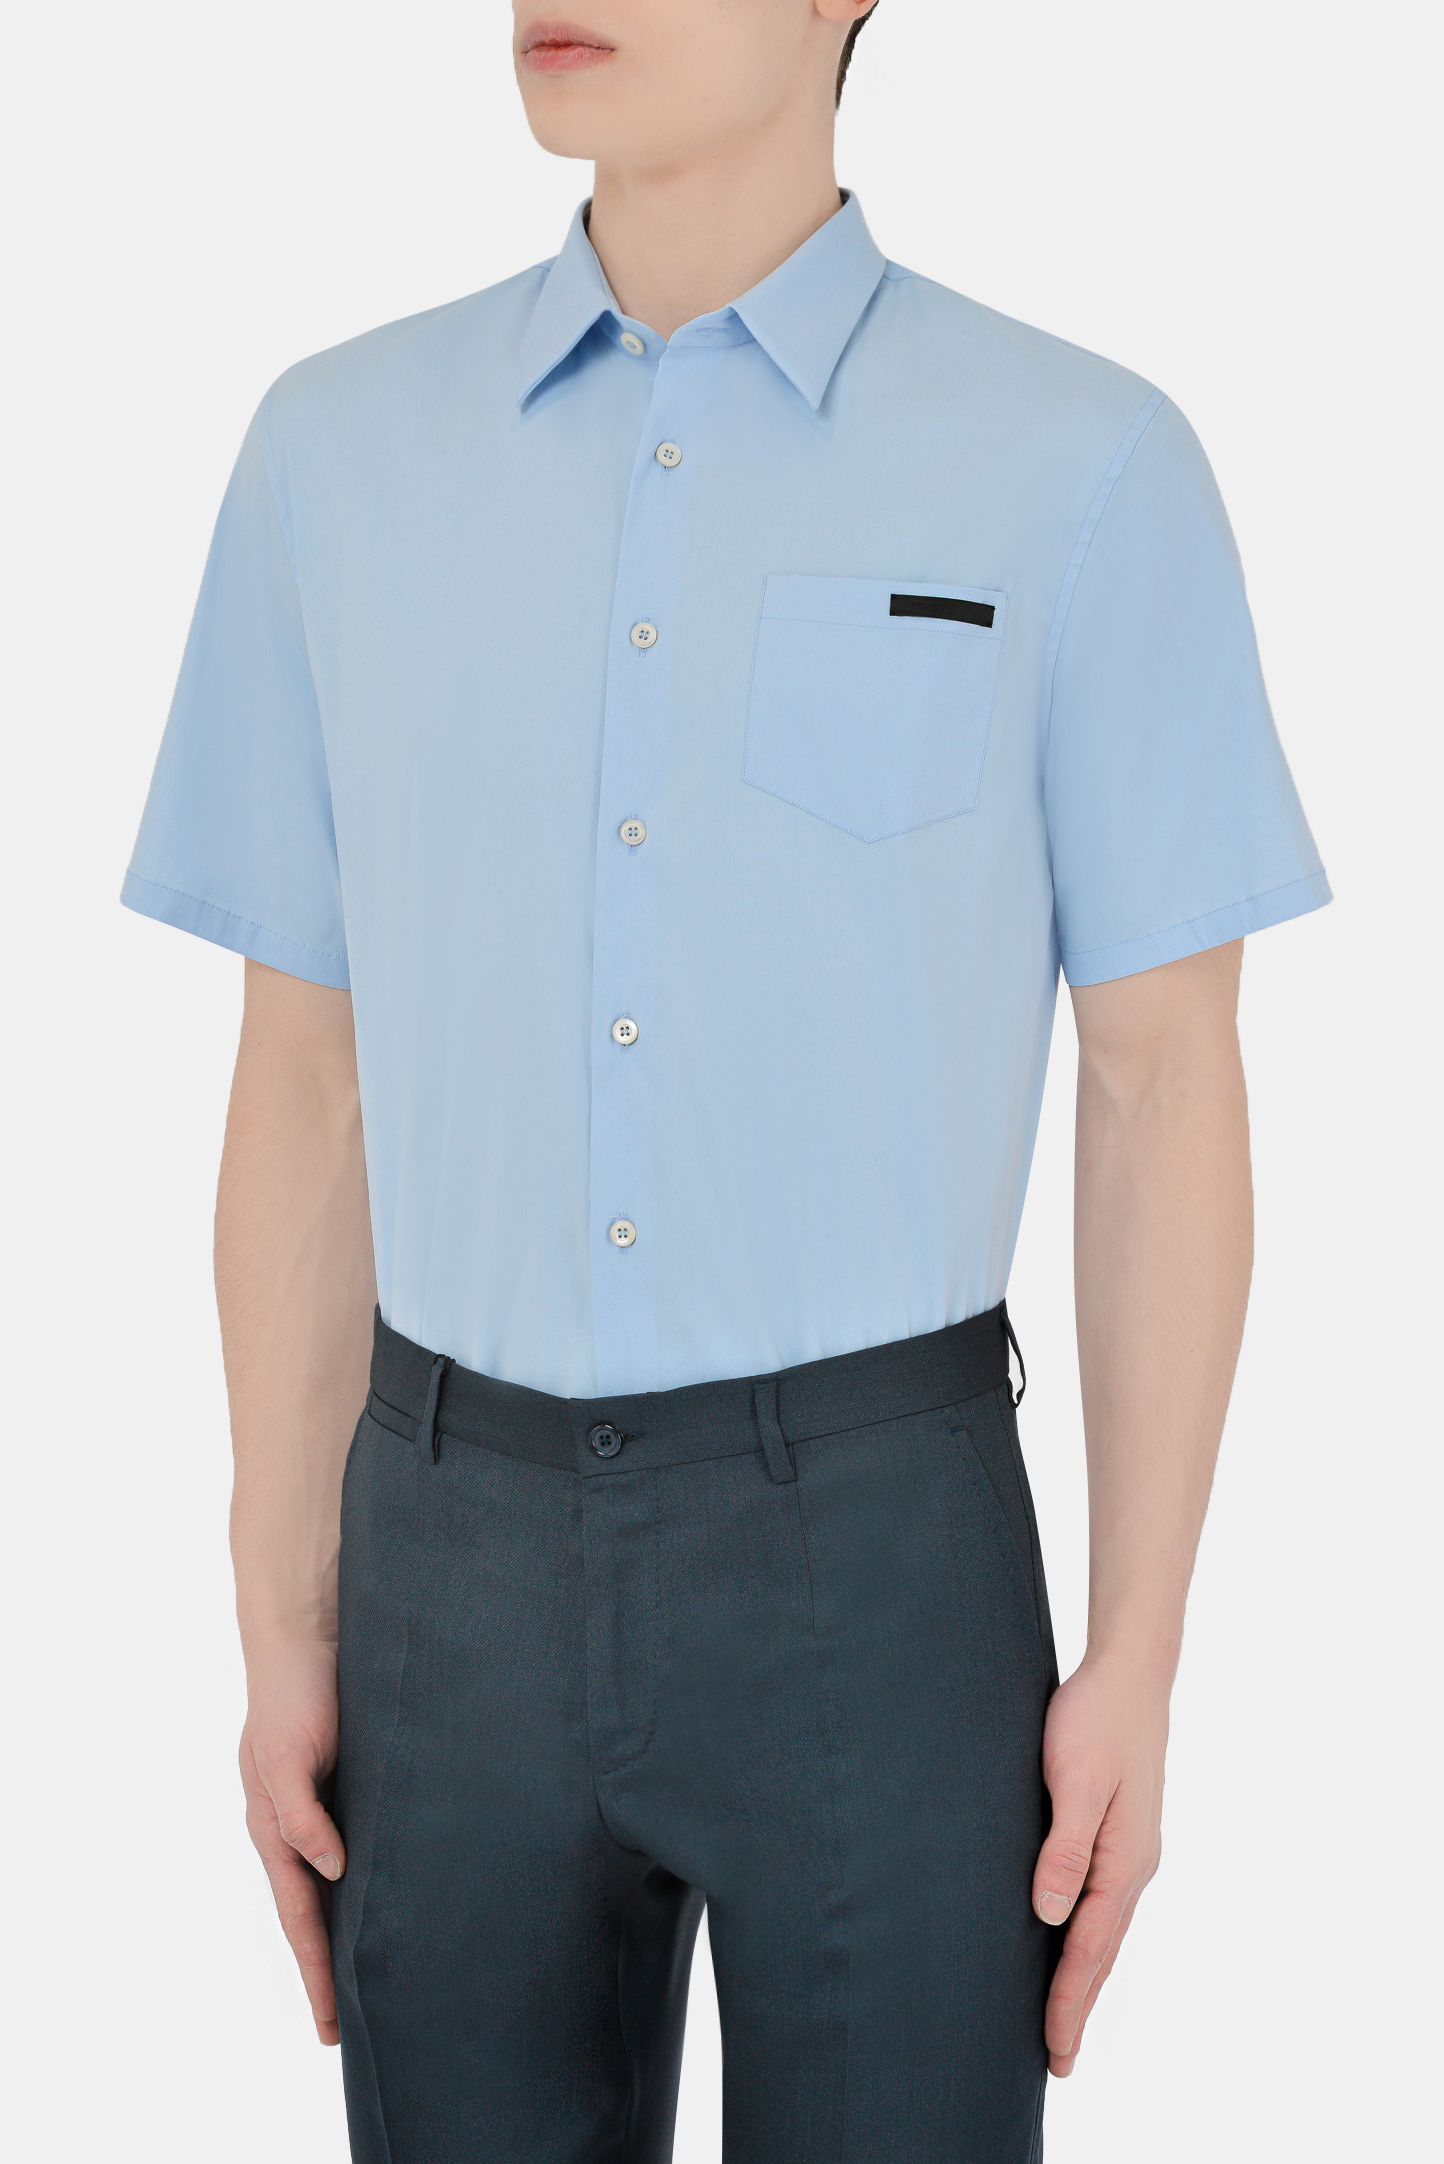 Рубашка PRADA UCS293 S 192, цвет: Голубой, Мужской